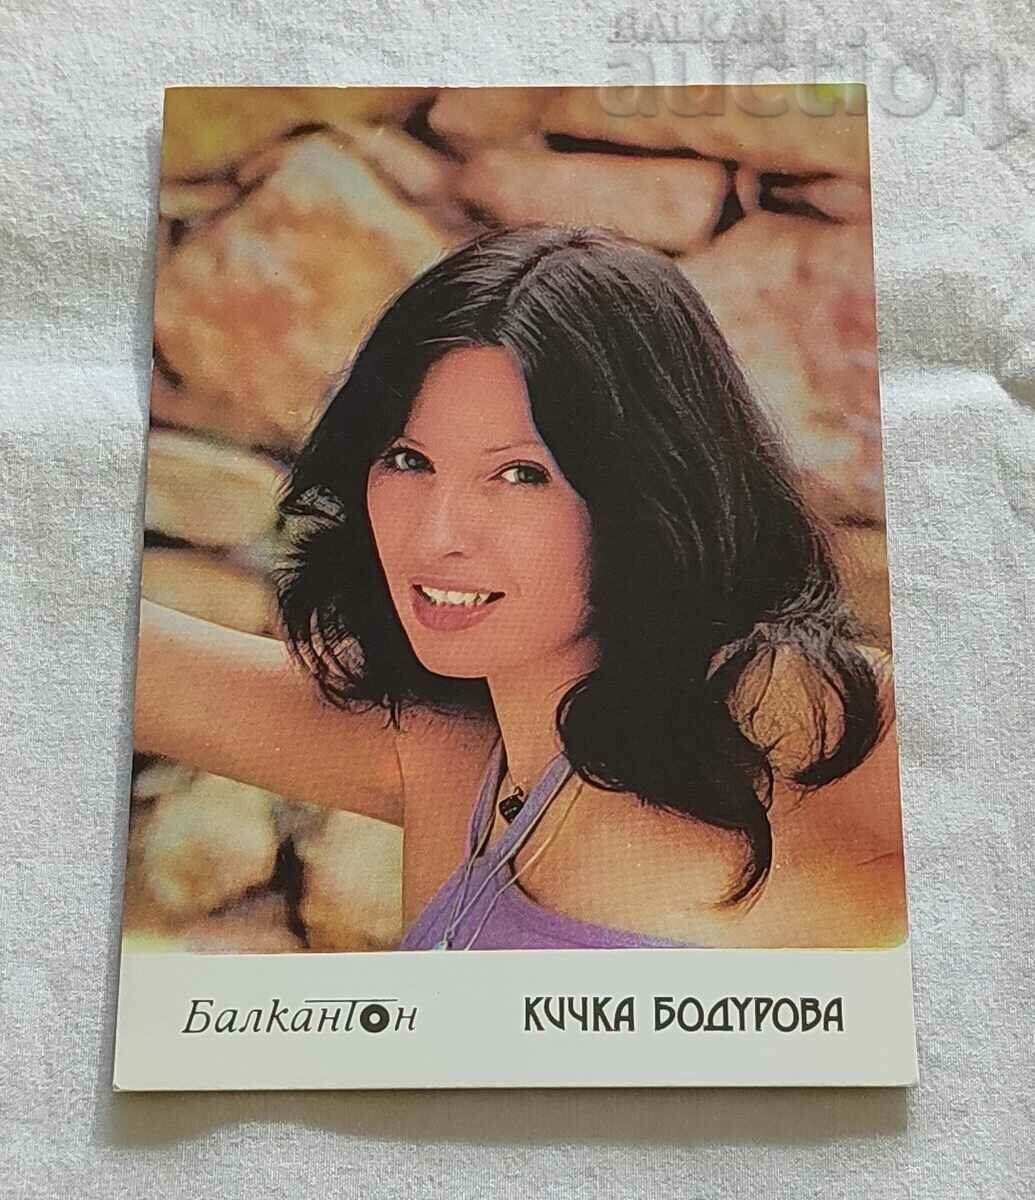 KICKA BODUROVA BG ESTRADA BALKANTON P.K. 198..